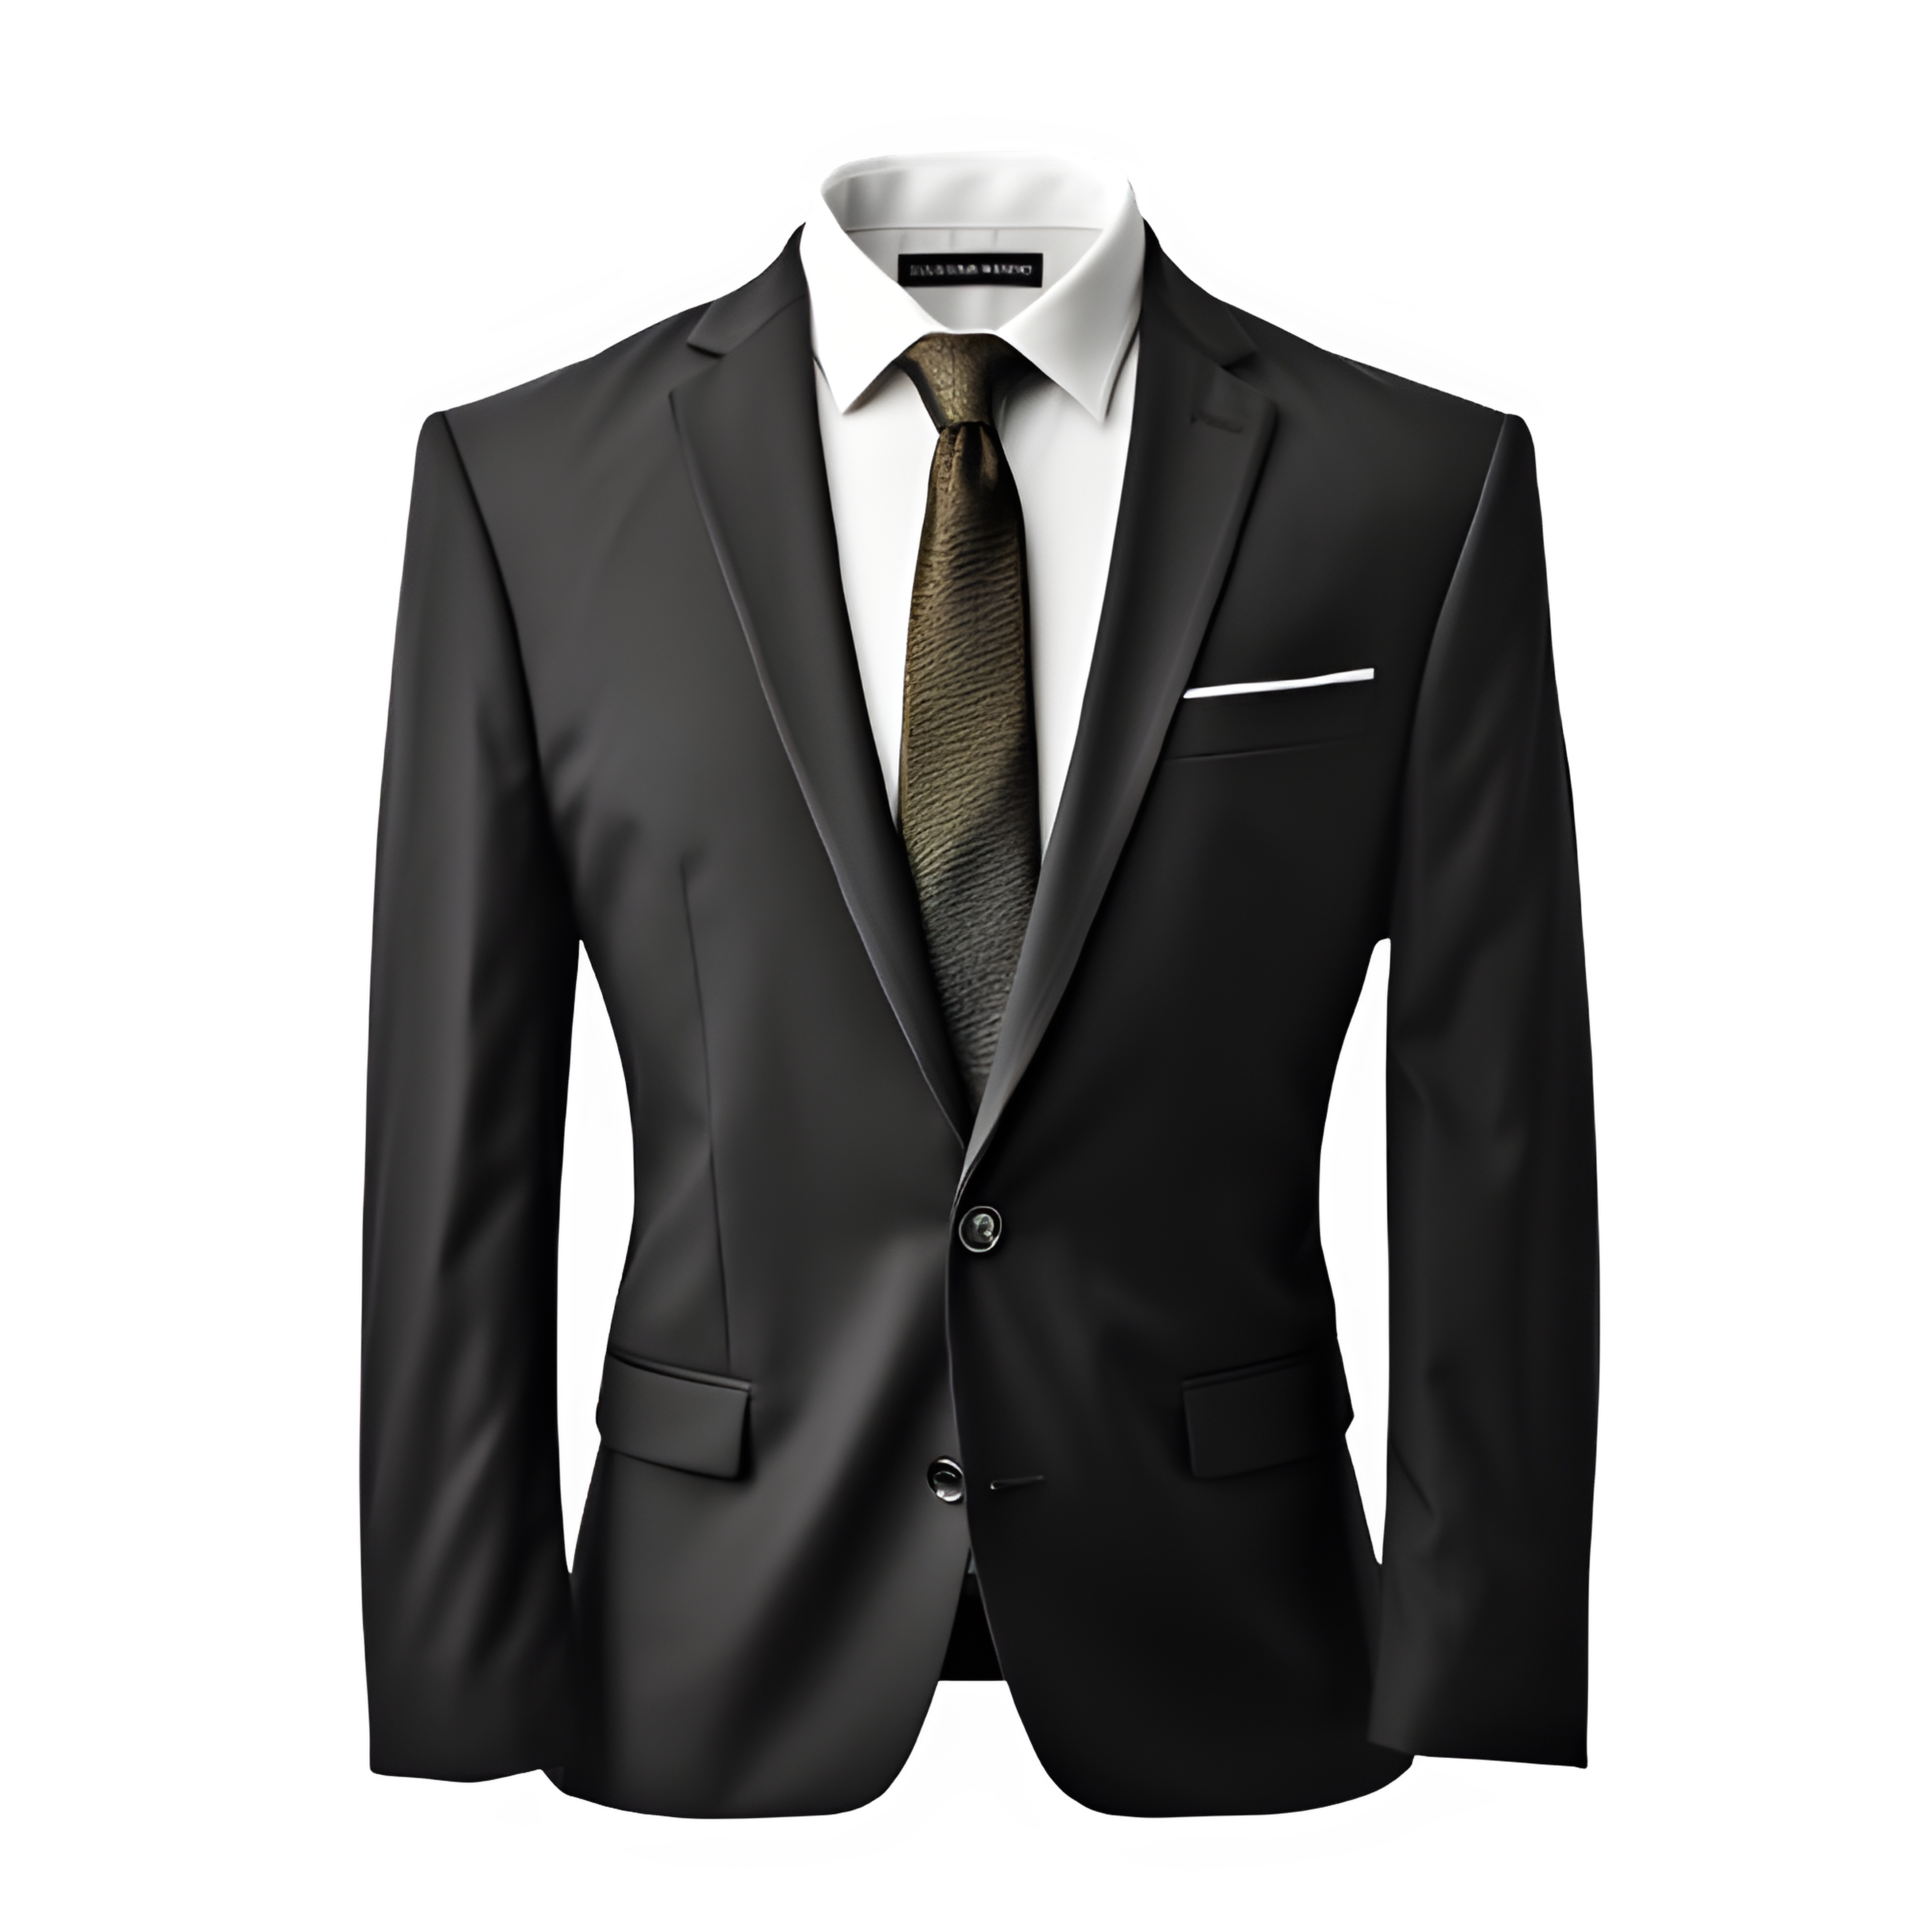 tuxedo suit mockup on transparent background ,tuxedo isolated cut out ...